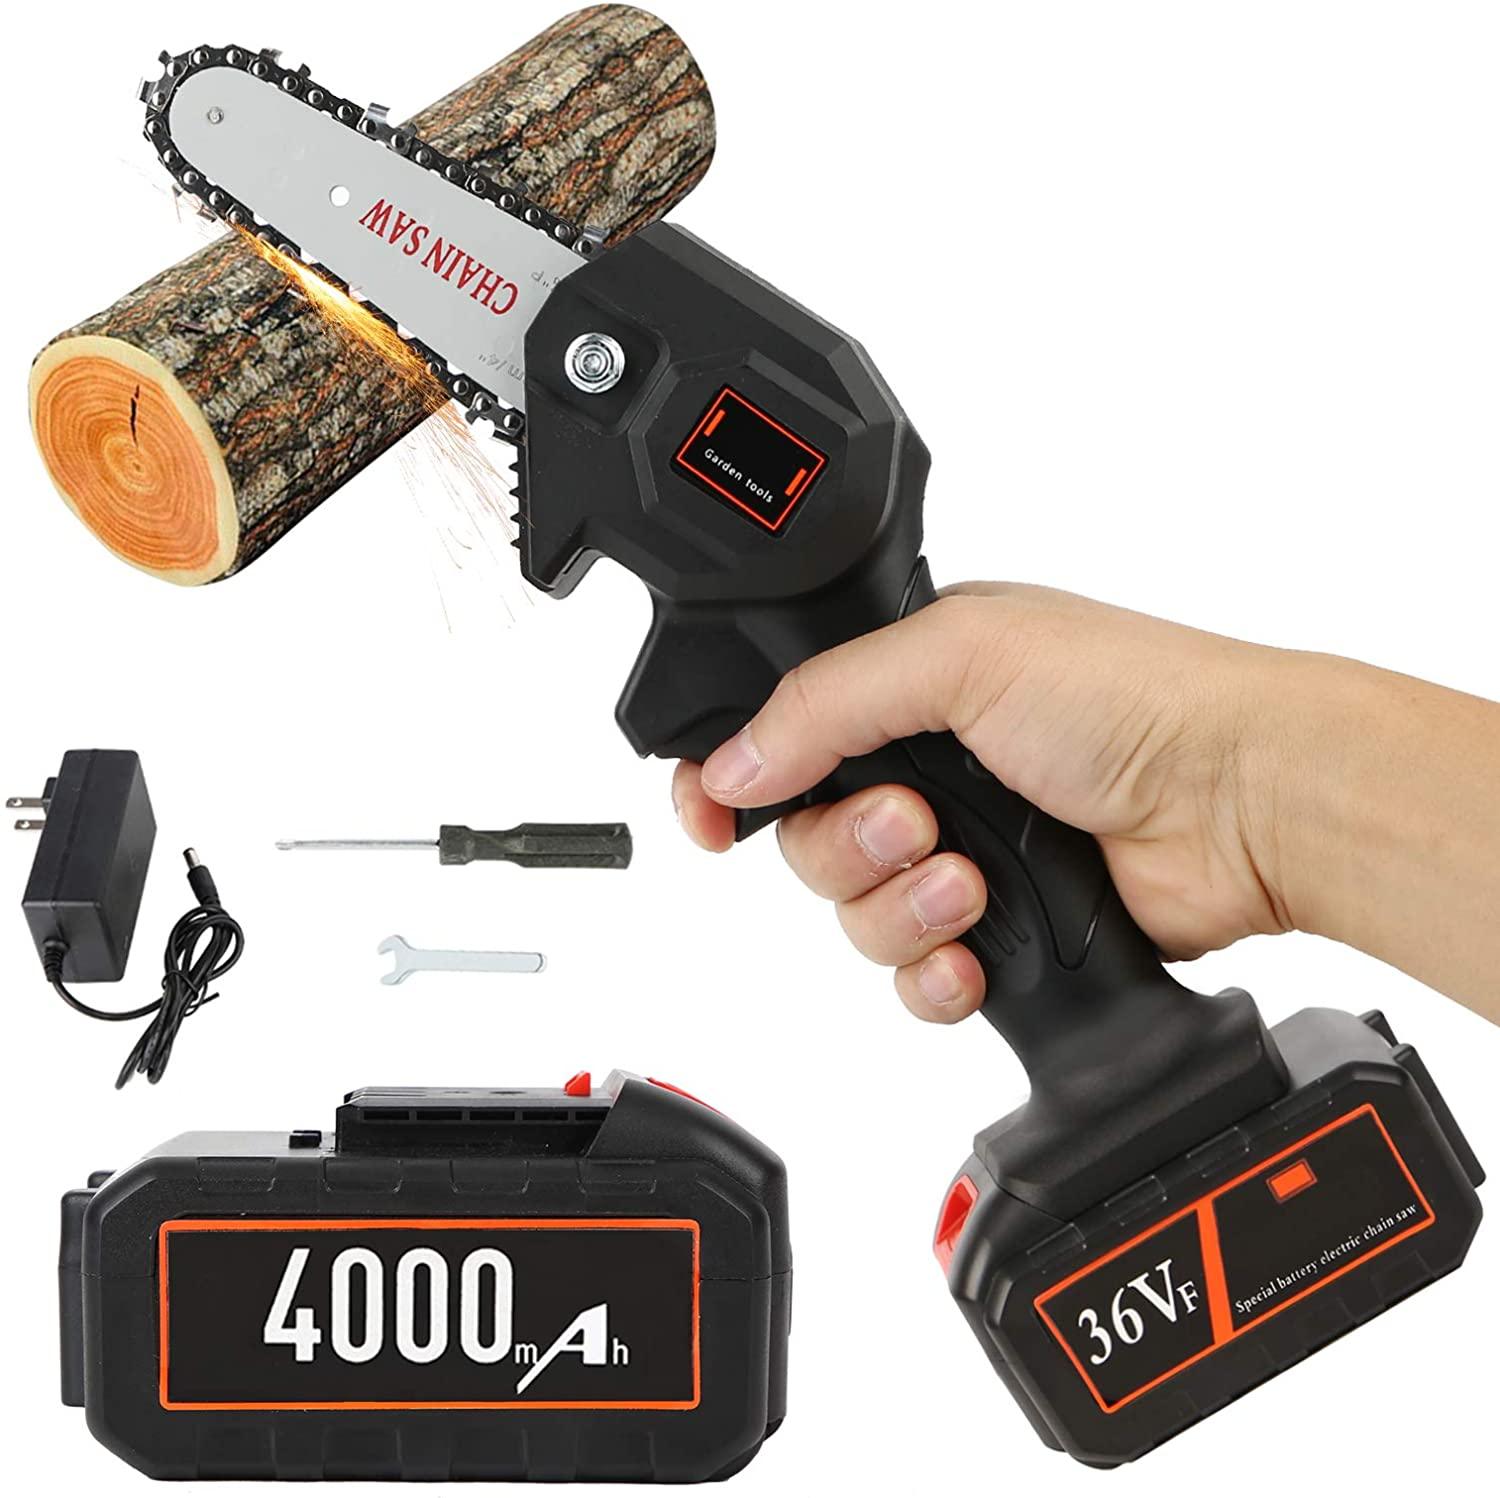 http://woosir.com/cdn/shop/products/woosir-36v-mini-electric-chainsaw-for-wood-cuttingwoosir202012171-945913.jpg?v=1657624908